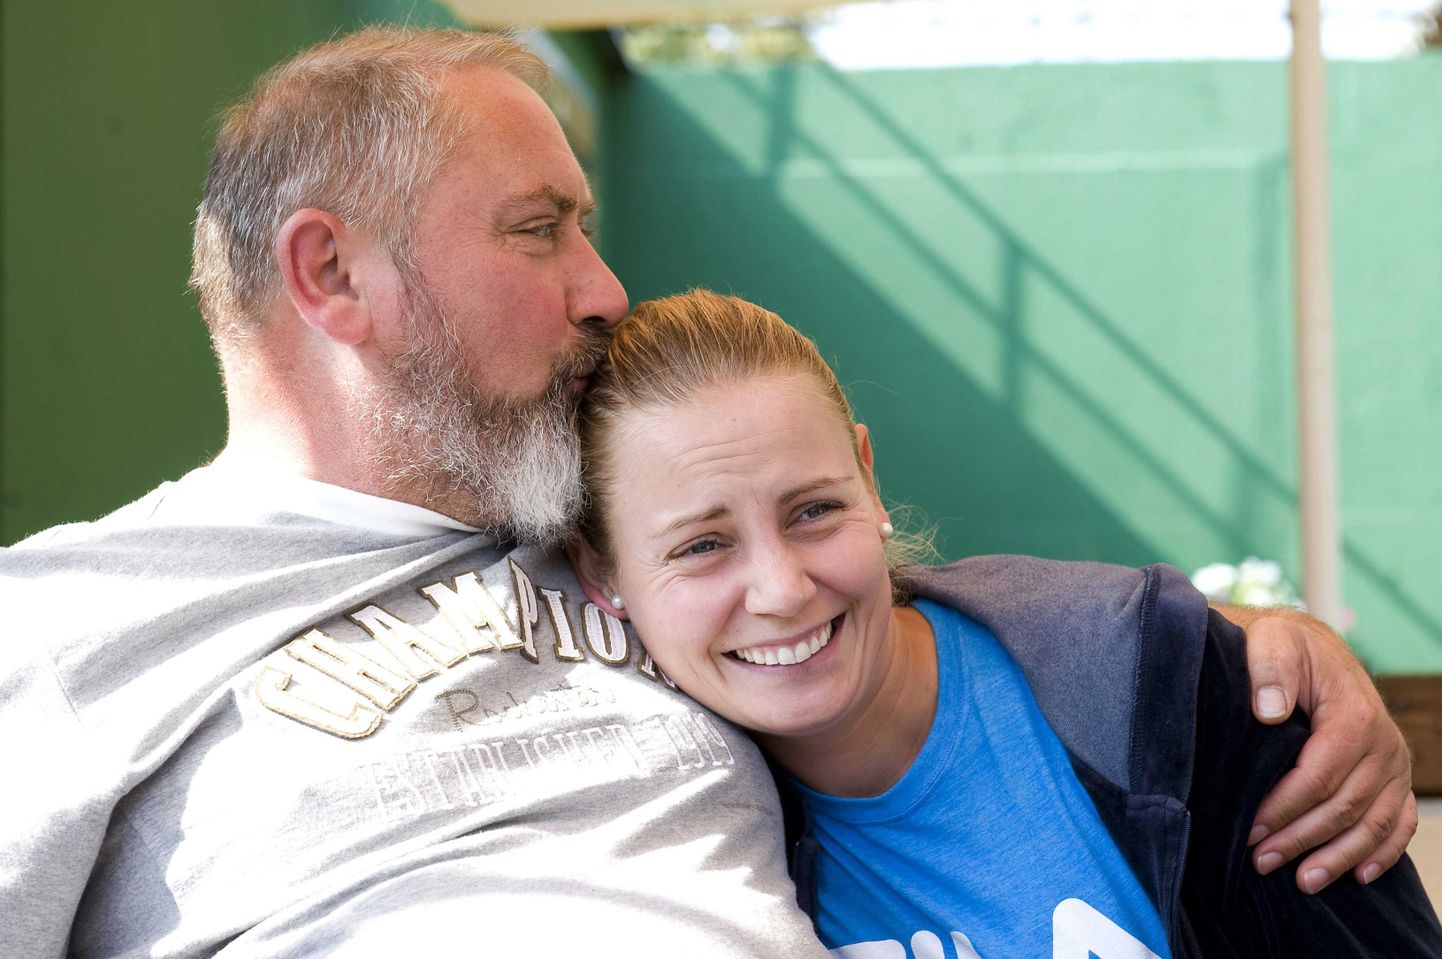 Jelena Dokic isaga 2011. aastal - üks naise katsetest suhteid parandada, aga sellest ei tulnud midagi välja.